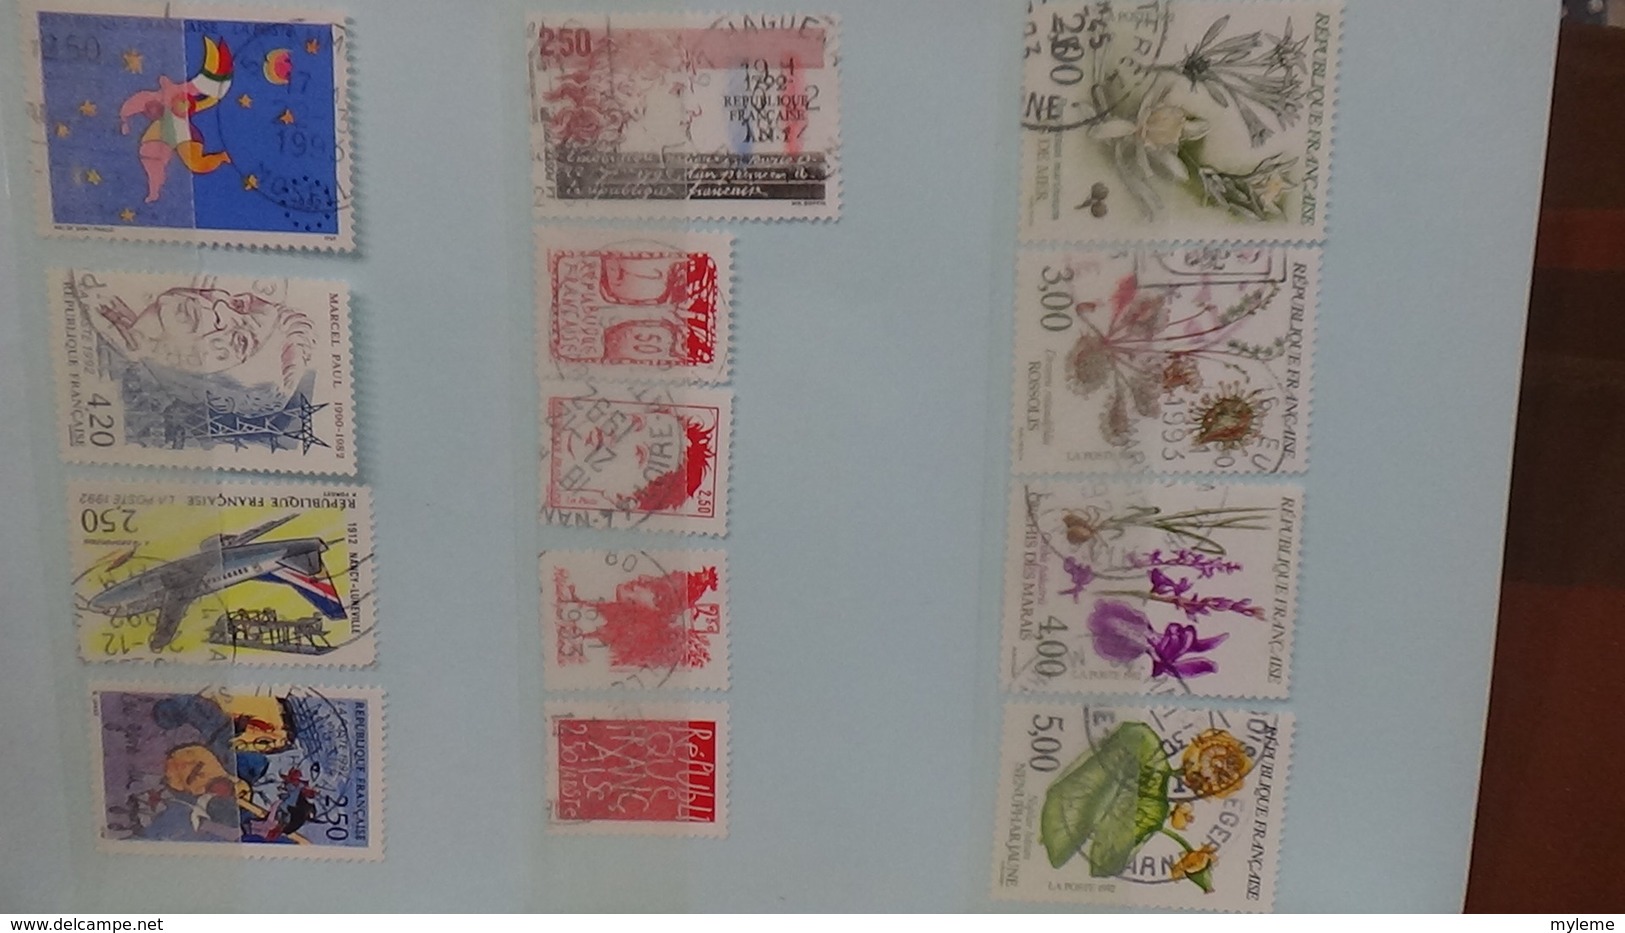 B369 Bon lot de timbres de France avec oblitérations rondes. Très sympa !!!